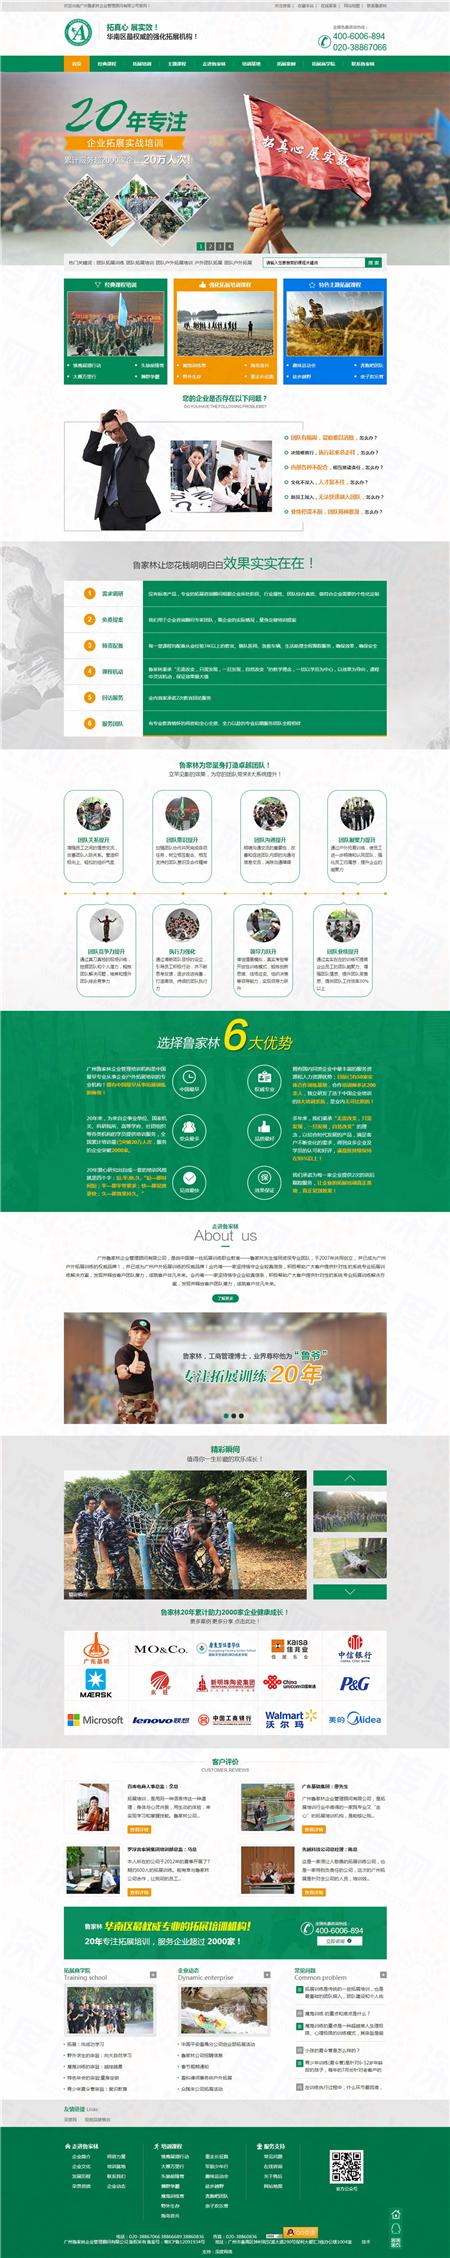 广州鲁家林拓展训练营销型网站案例